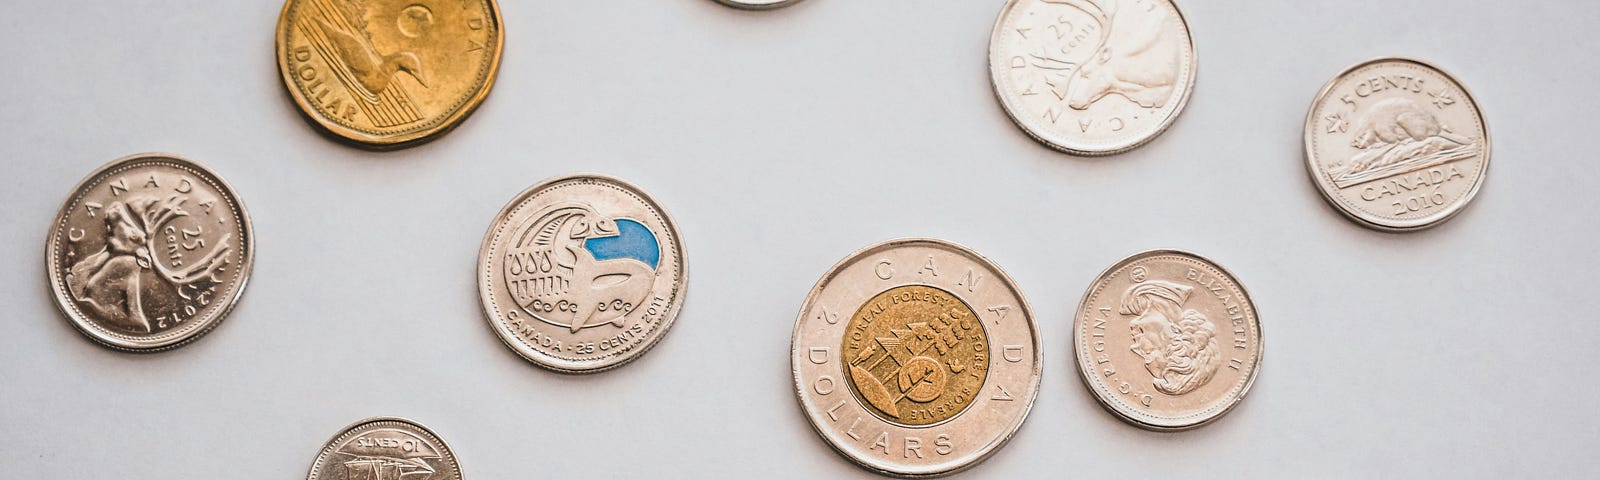 Canadian coins — dimes, nickels, toonies, and loonies